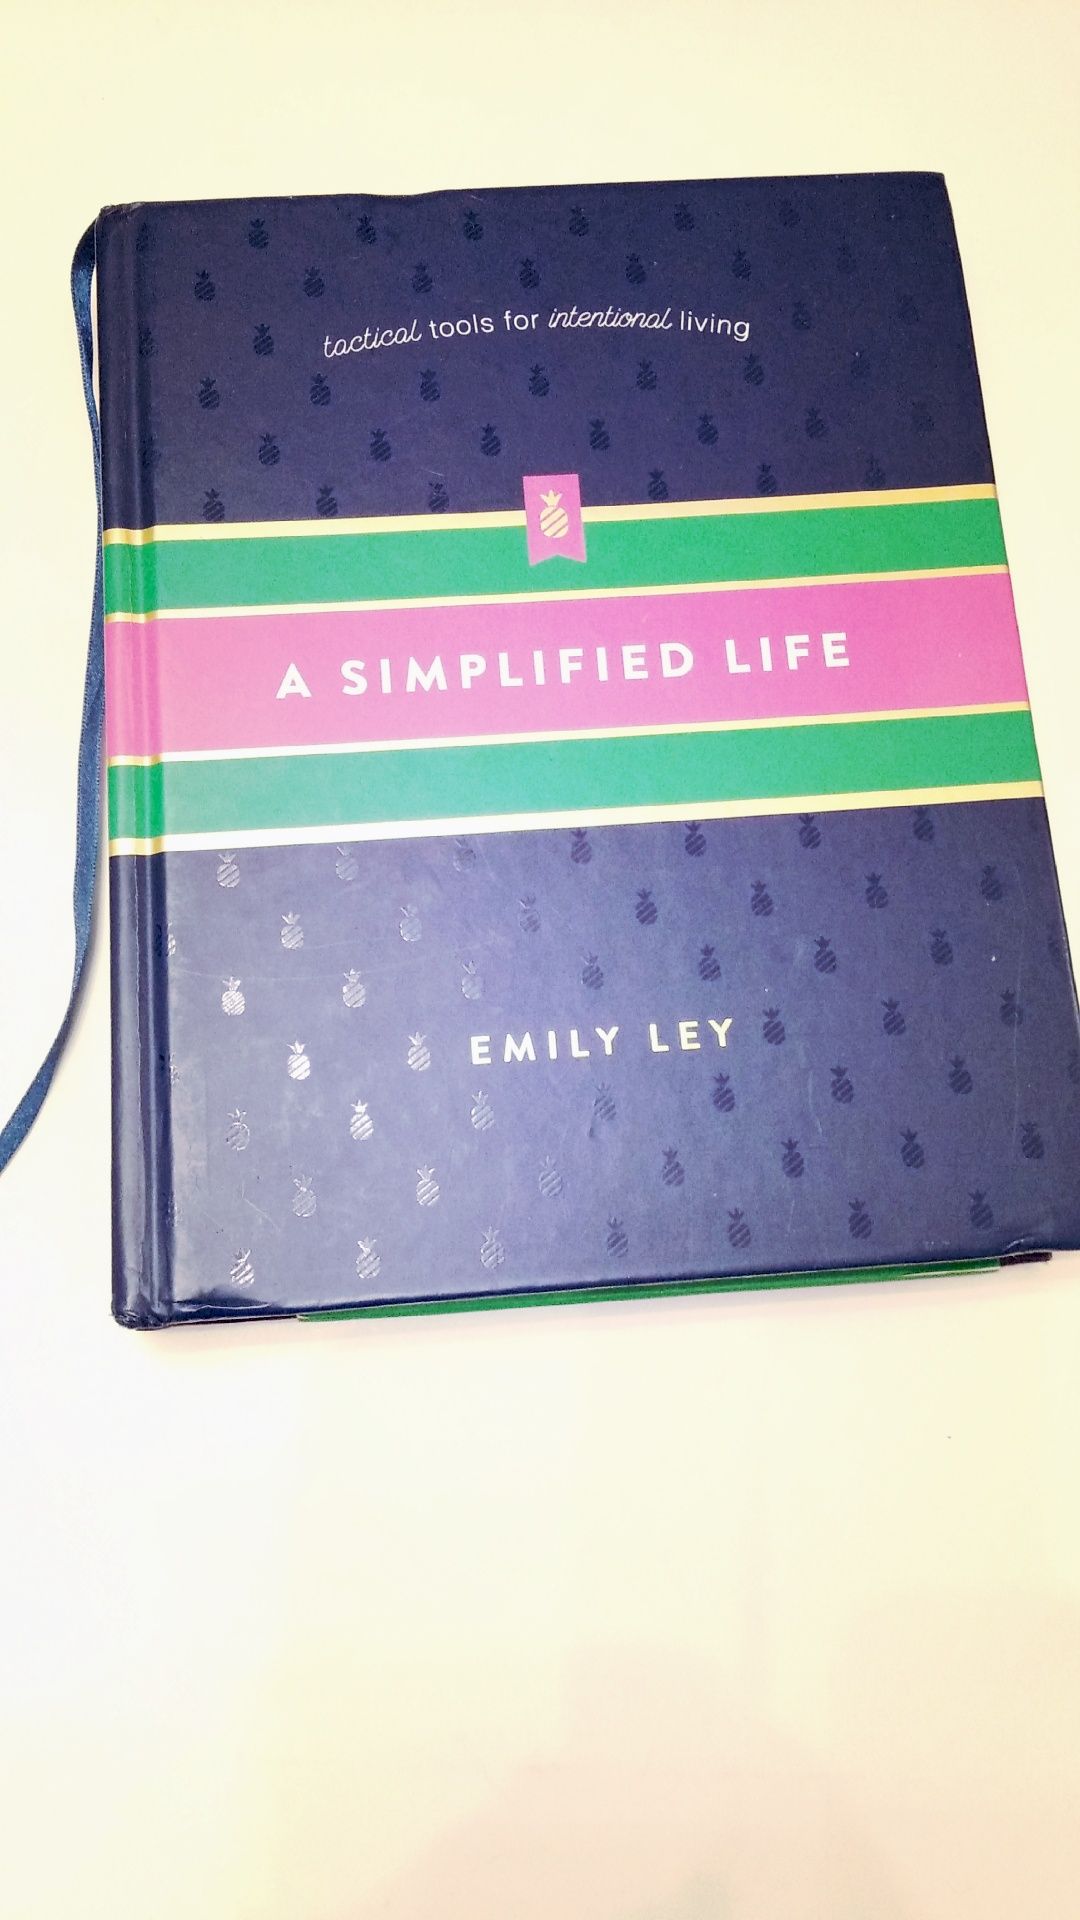 A simplified life. Книга планер на английском языке